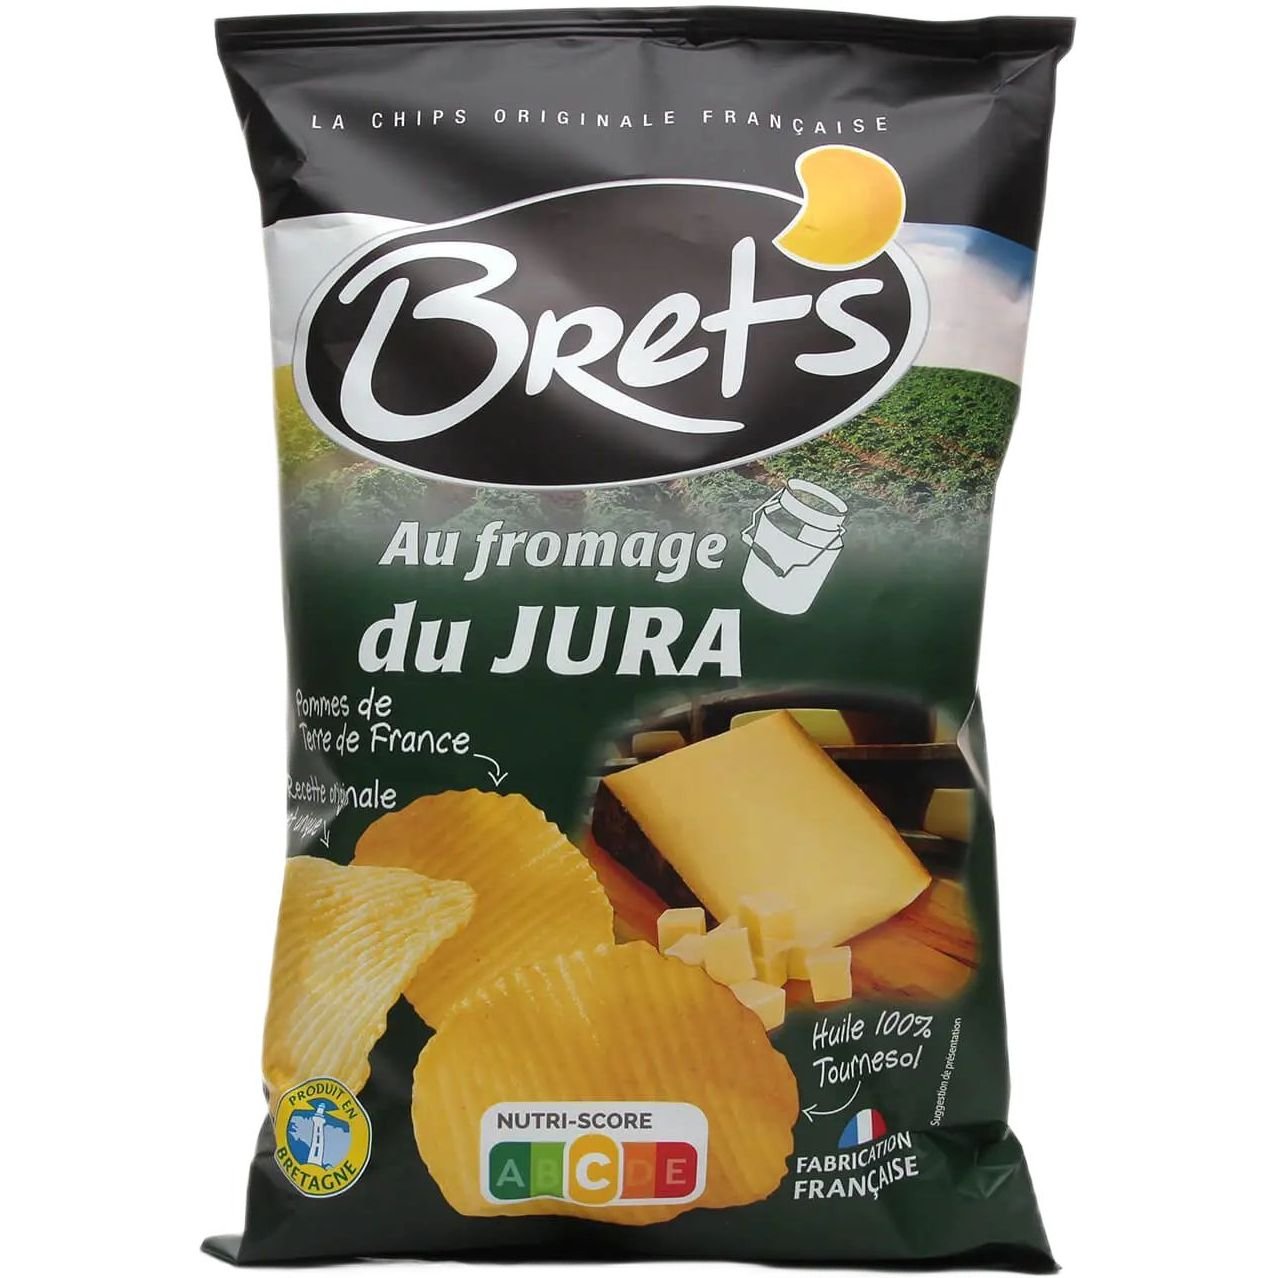 Чипсы Bret's со вкусом сыра жура 125 г (801535) - фото 1